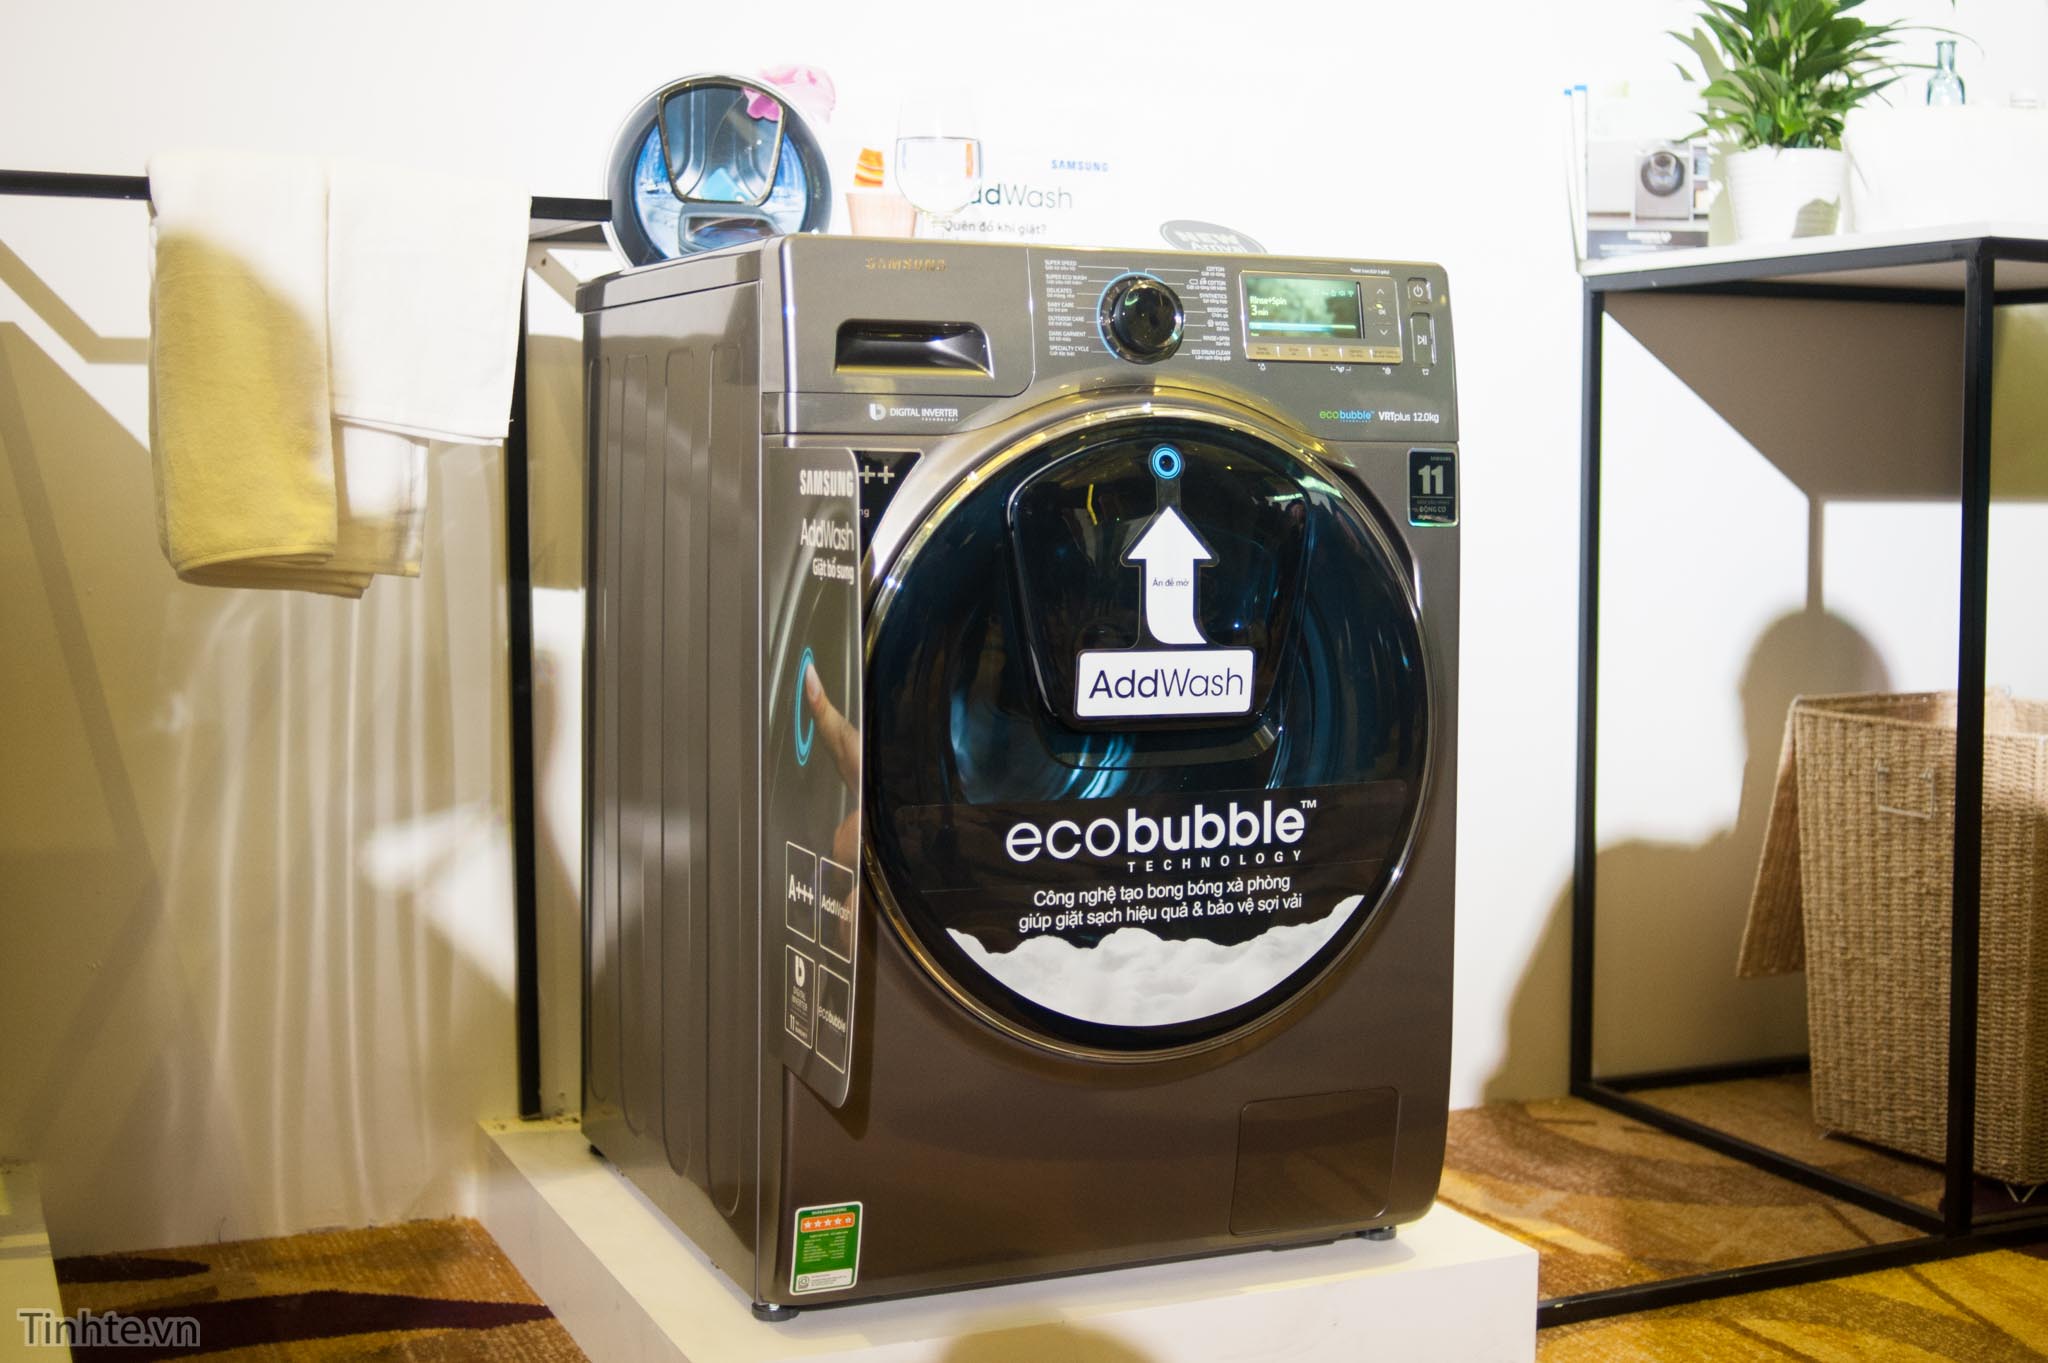 Máy giặt Samsung Add Wash và công nghệ Eco bubble